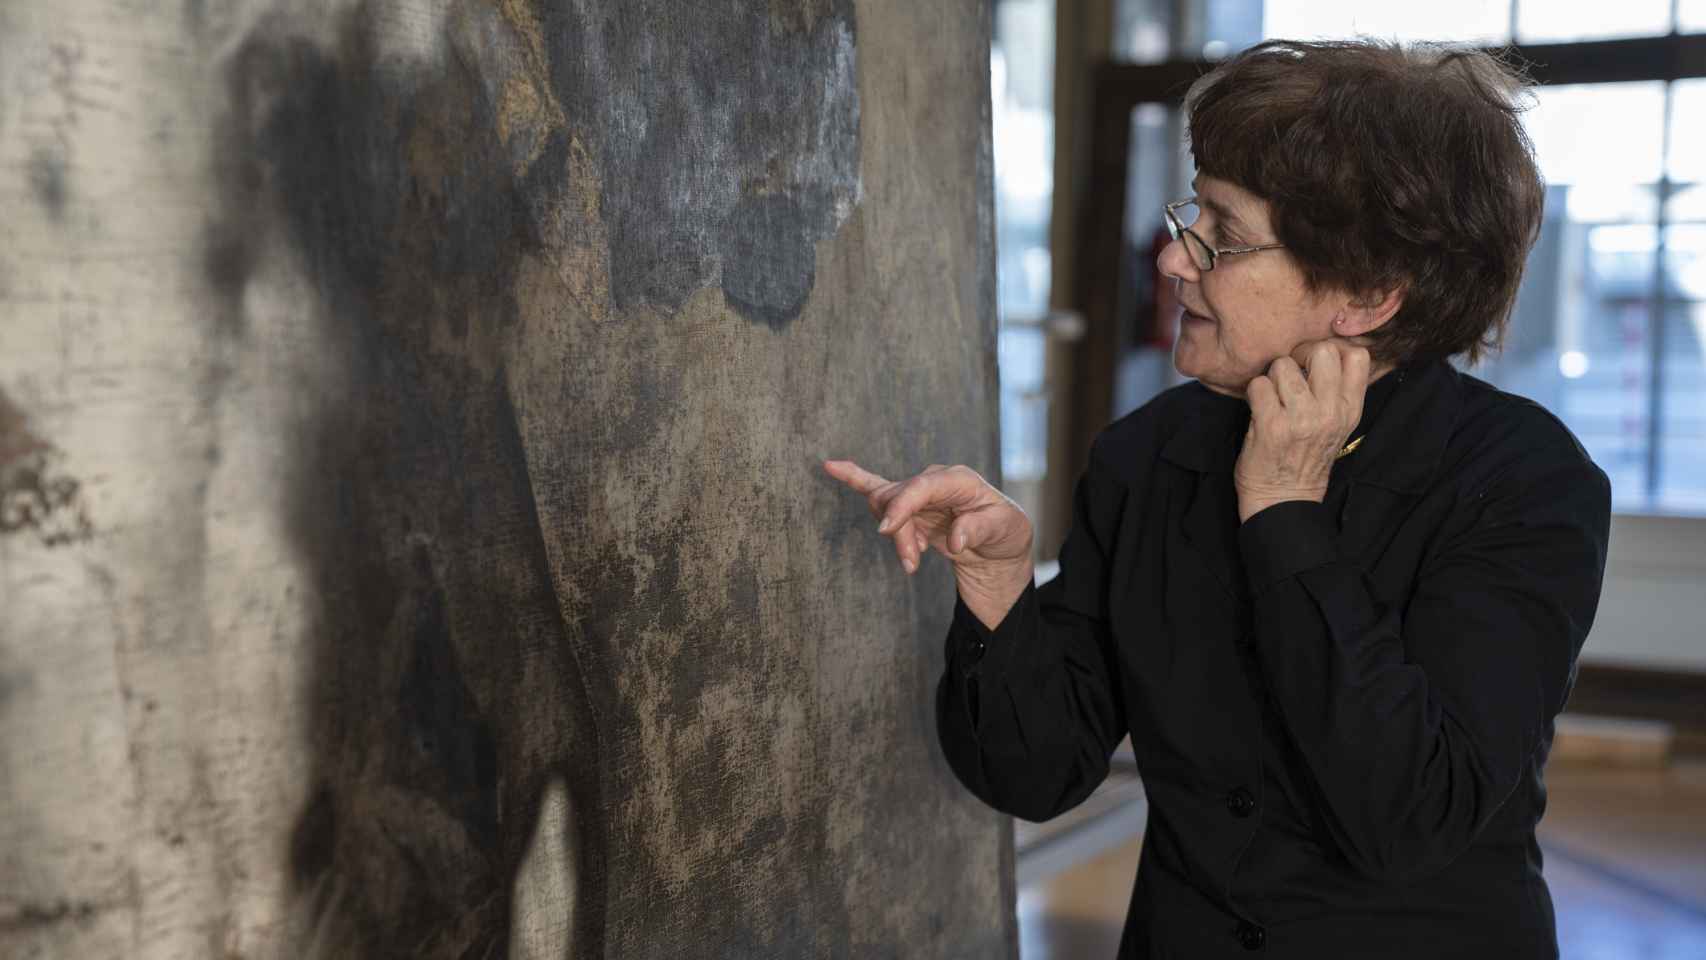 Teresa lleva dos años limpiando el cuadro de Luca Giordano.